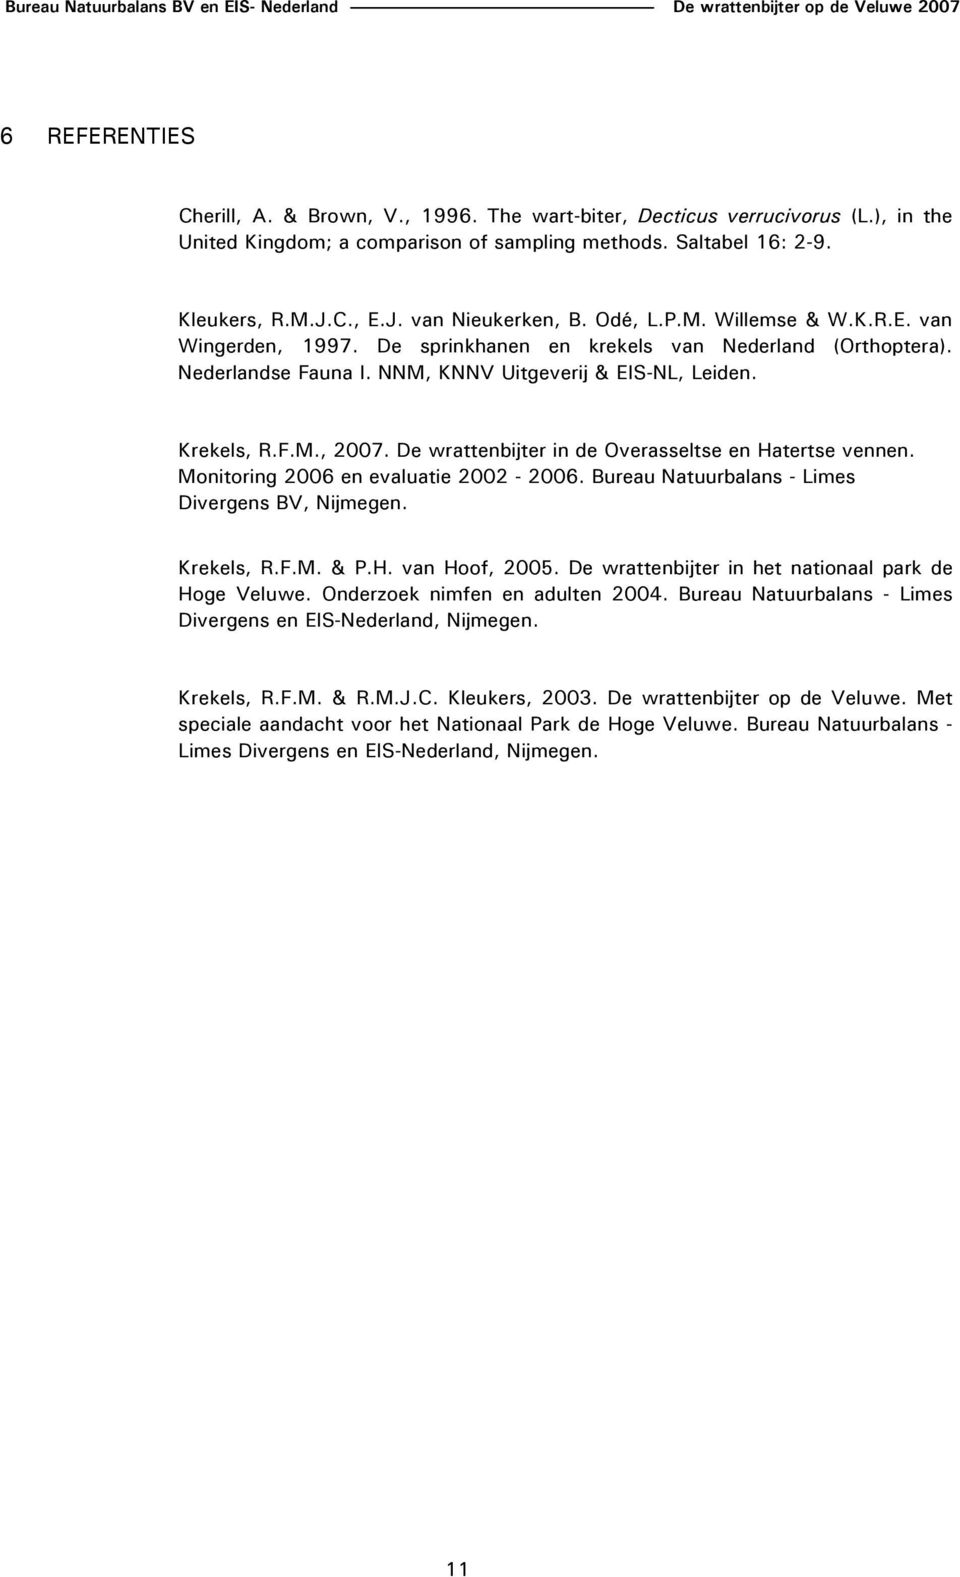 De wrattenbijter in de Overasseltse en Hatertse vennen. Monitoring 2006 en evaluatie 2002-2006. Bureau Natuurbalans - Limes Divergens BV, Nijmegen. Krekels, R.F.M. & P.H. van Hoof, 2005.